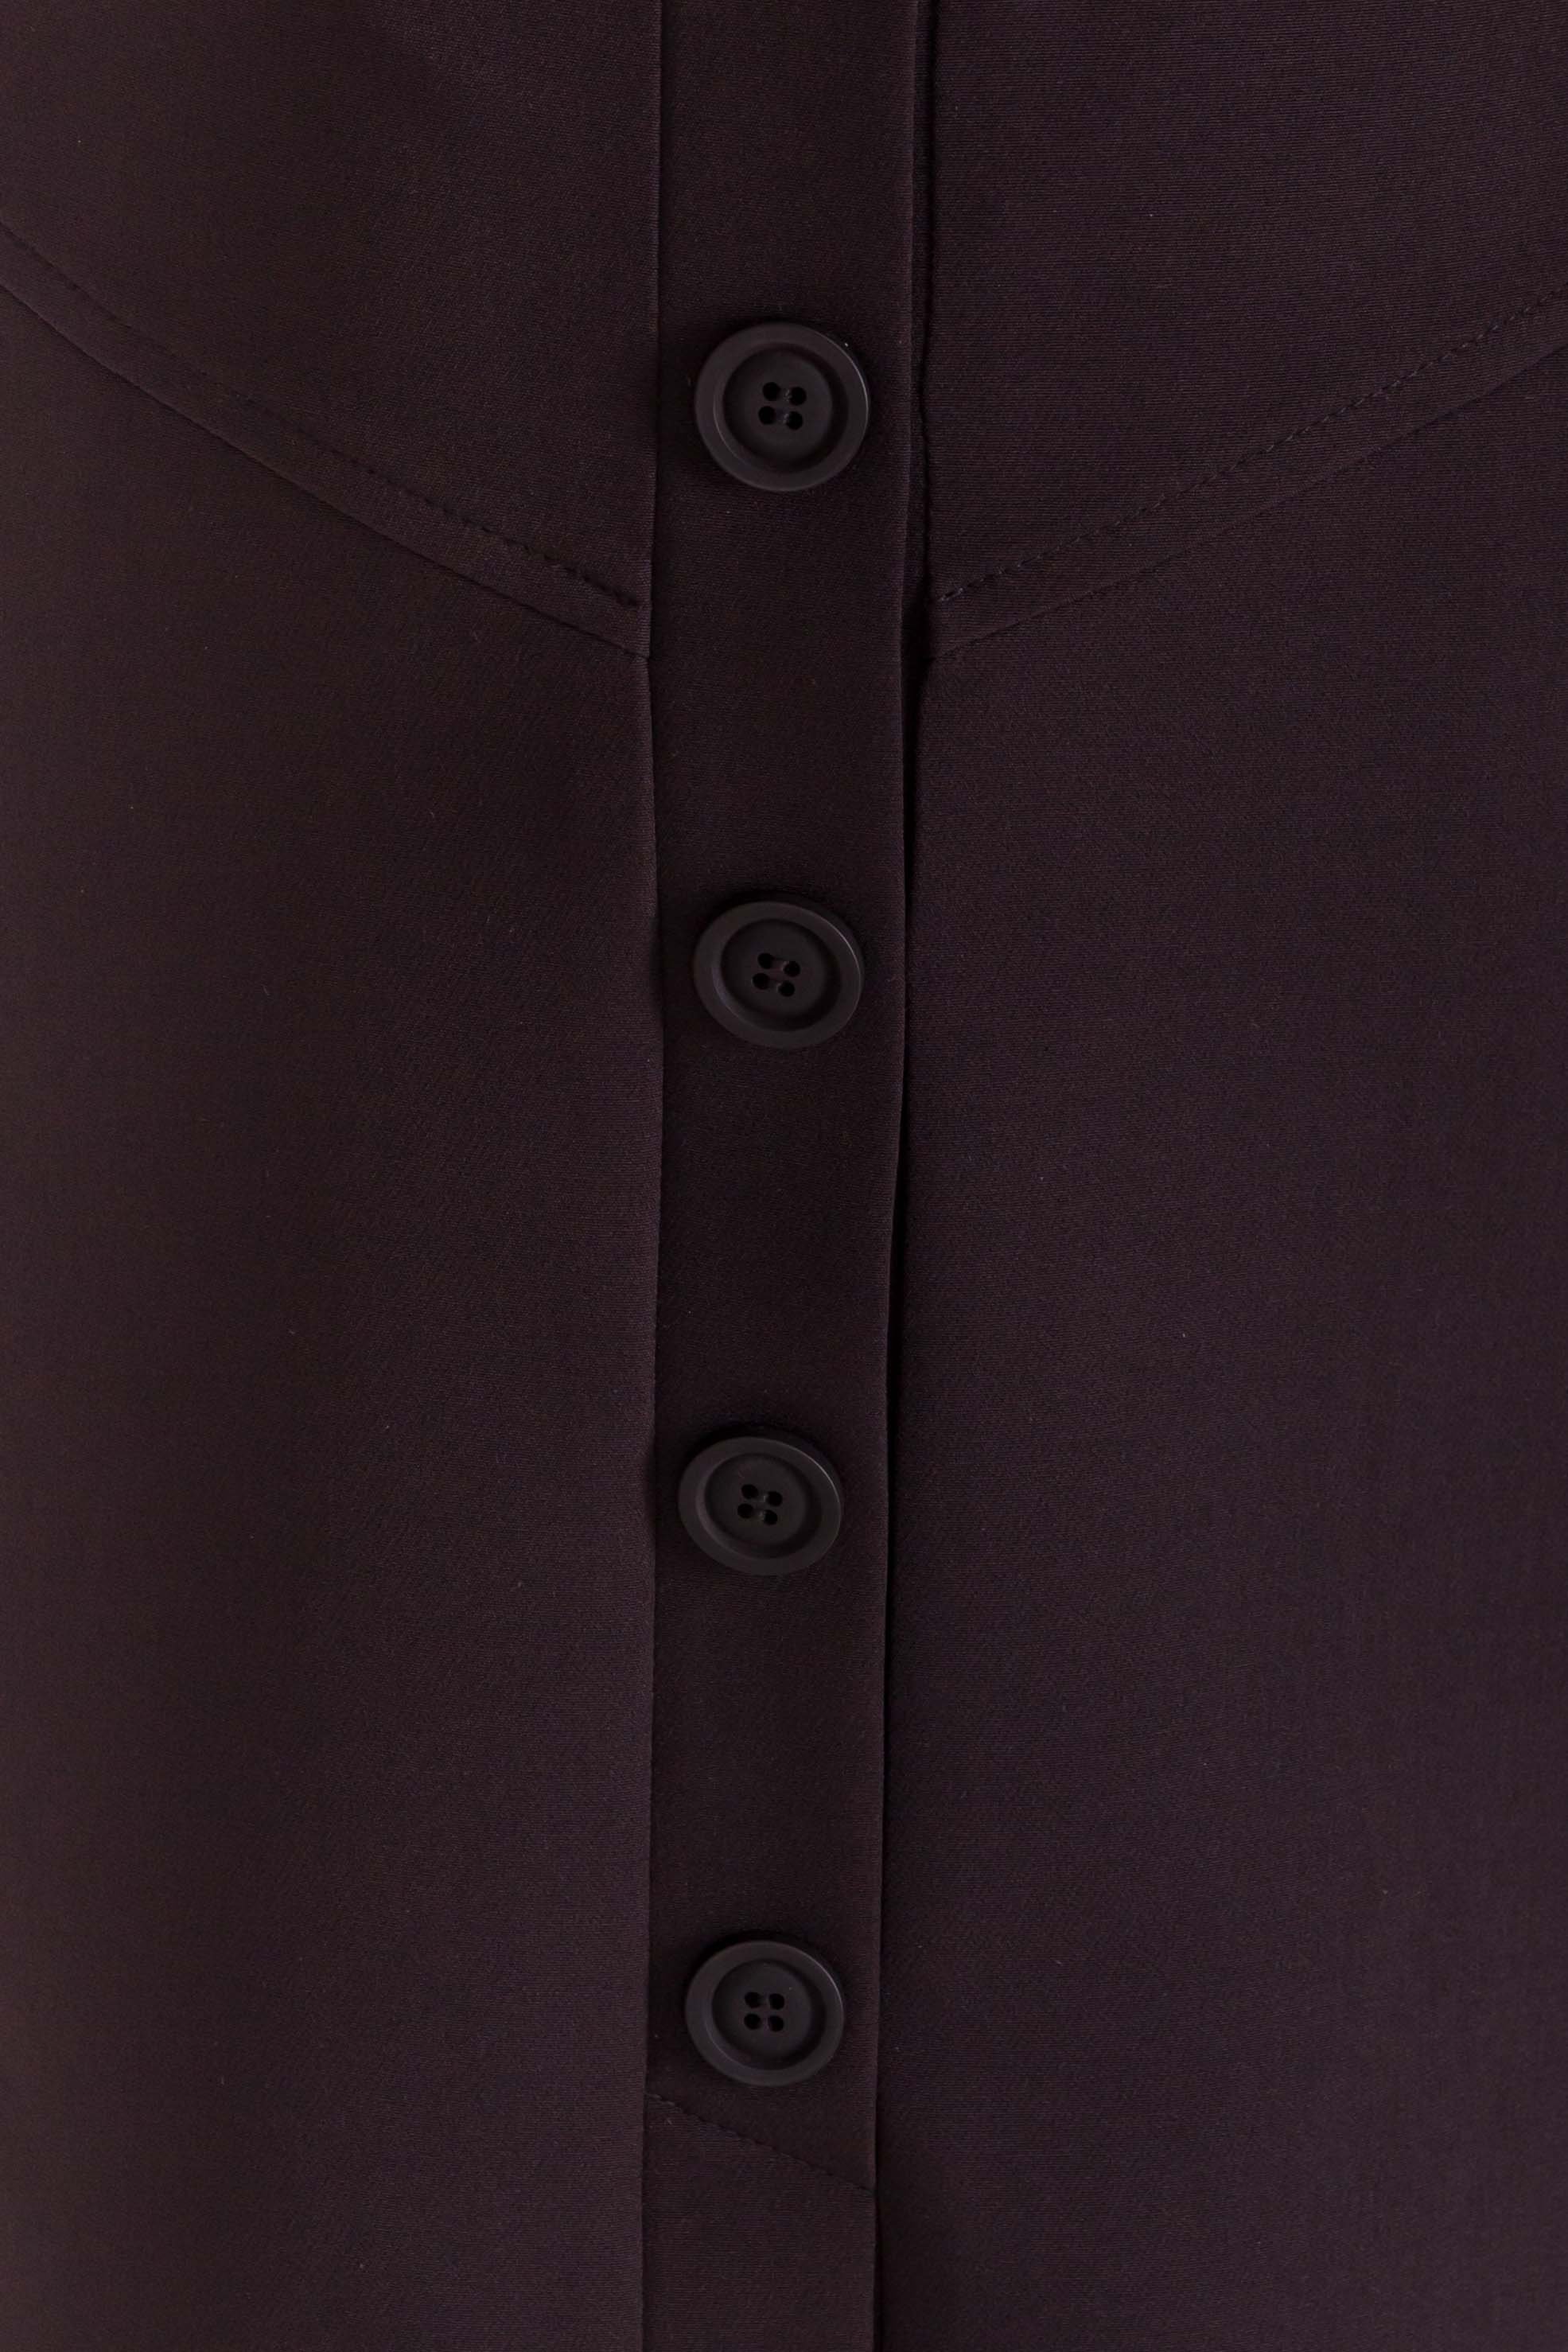 Трапециевидная юбка мини длины Ньюарк 7705 АРТ. 43613 Цвет: Черный - фото 8, интернет магазин tm-modus.ru